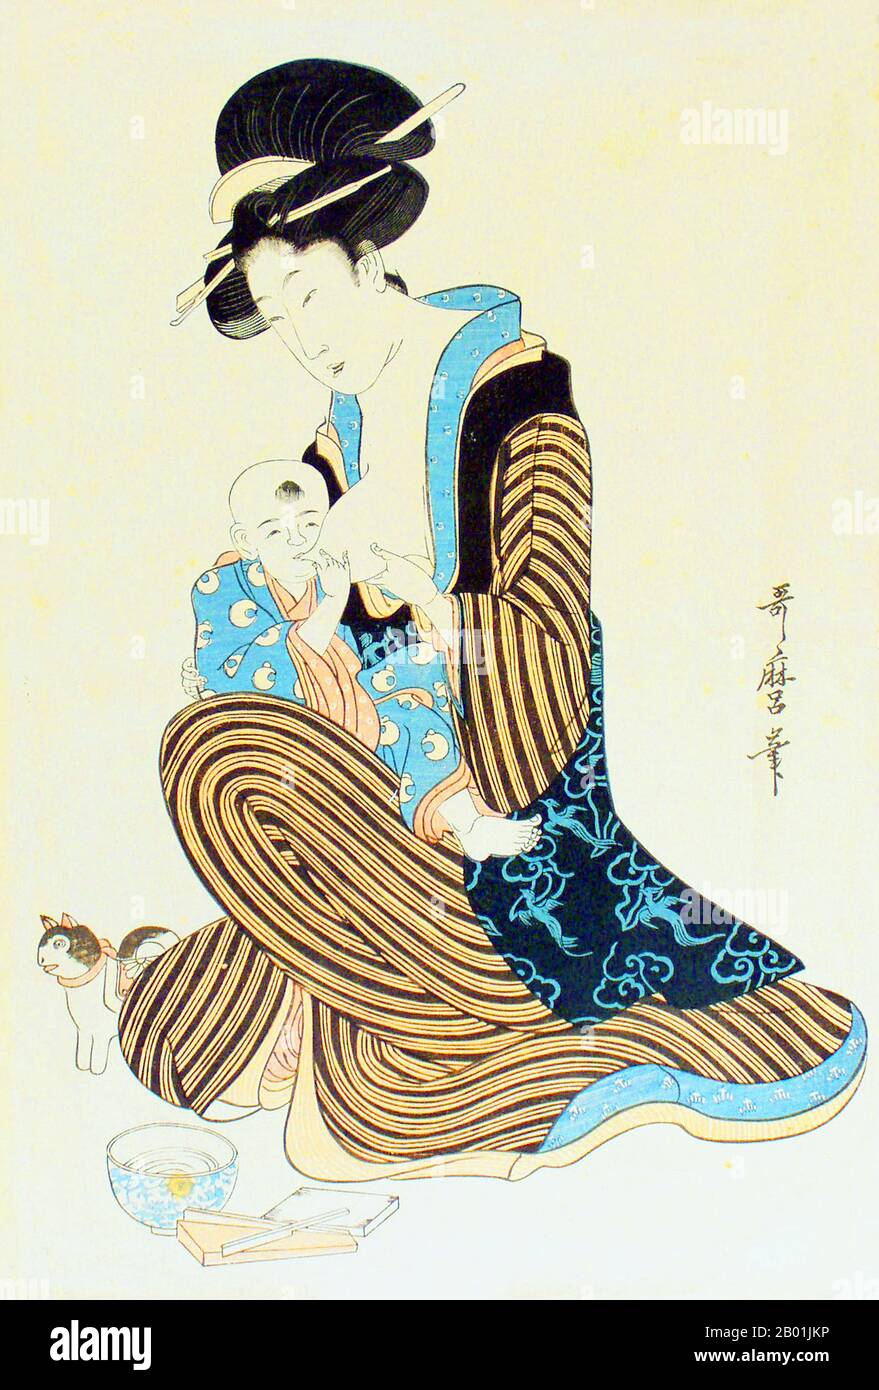 Japan: Säuglingsschwester. Ukiyo-e Holzblock von Kitagawa Utamaro (ca. 1753. Bis 31. Oktober 1806), Ende des 18. Jahrhunderts. Kitagawa Utamaro war ein japanischer Druckmacher und Maler, der als einer der größten Künstler von Holzblockdrucken gilt (Ukiyo-e). Er ist vor allem bekannt für seine meisterhaft zusammengestellten Studien über Frauen, bekannt als Bijinga. Er produzierte auch Naturstudien, insbesondere illustrierte Bücher über Insekten. Stockfoto